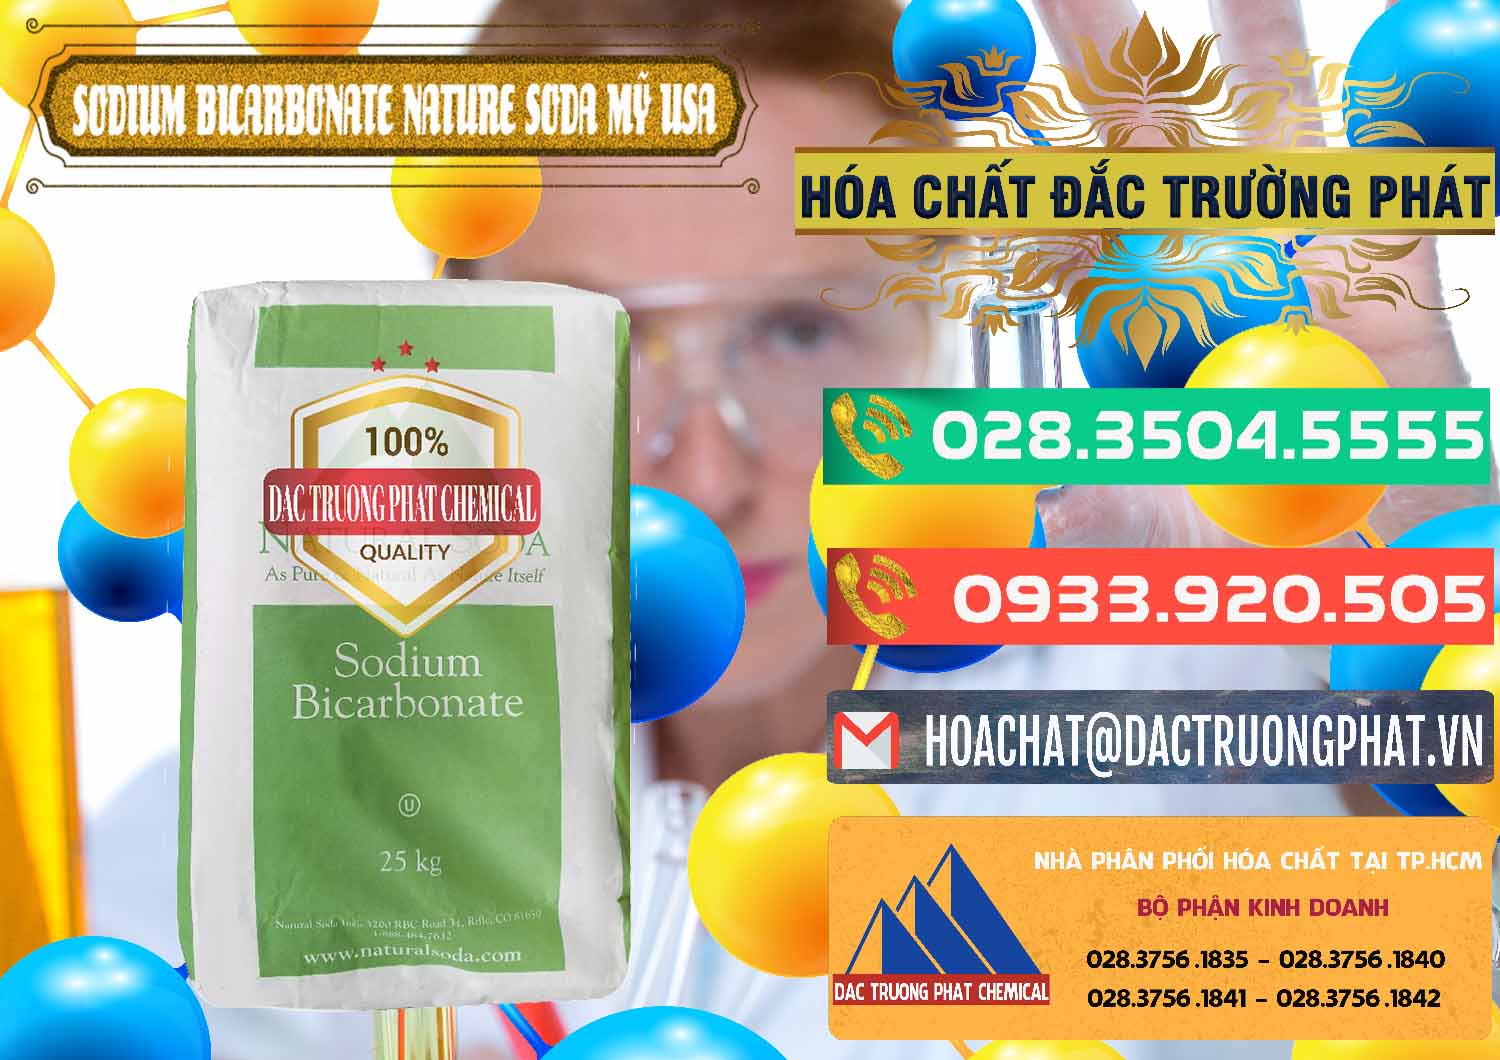 Chuyên cung ứng và bán Sodium Bicarbonate – Bicar NaHCO3 Food Grade Nature Soda Mỹ USA - 0256 - Đơn vị cung ứng và phân phối hóa chất tại TP.HCM - congtyhoachat.com.vn